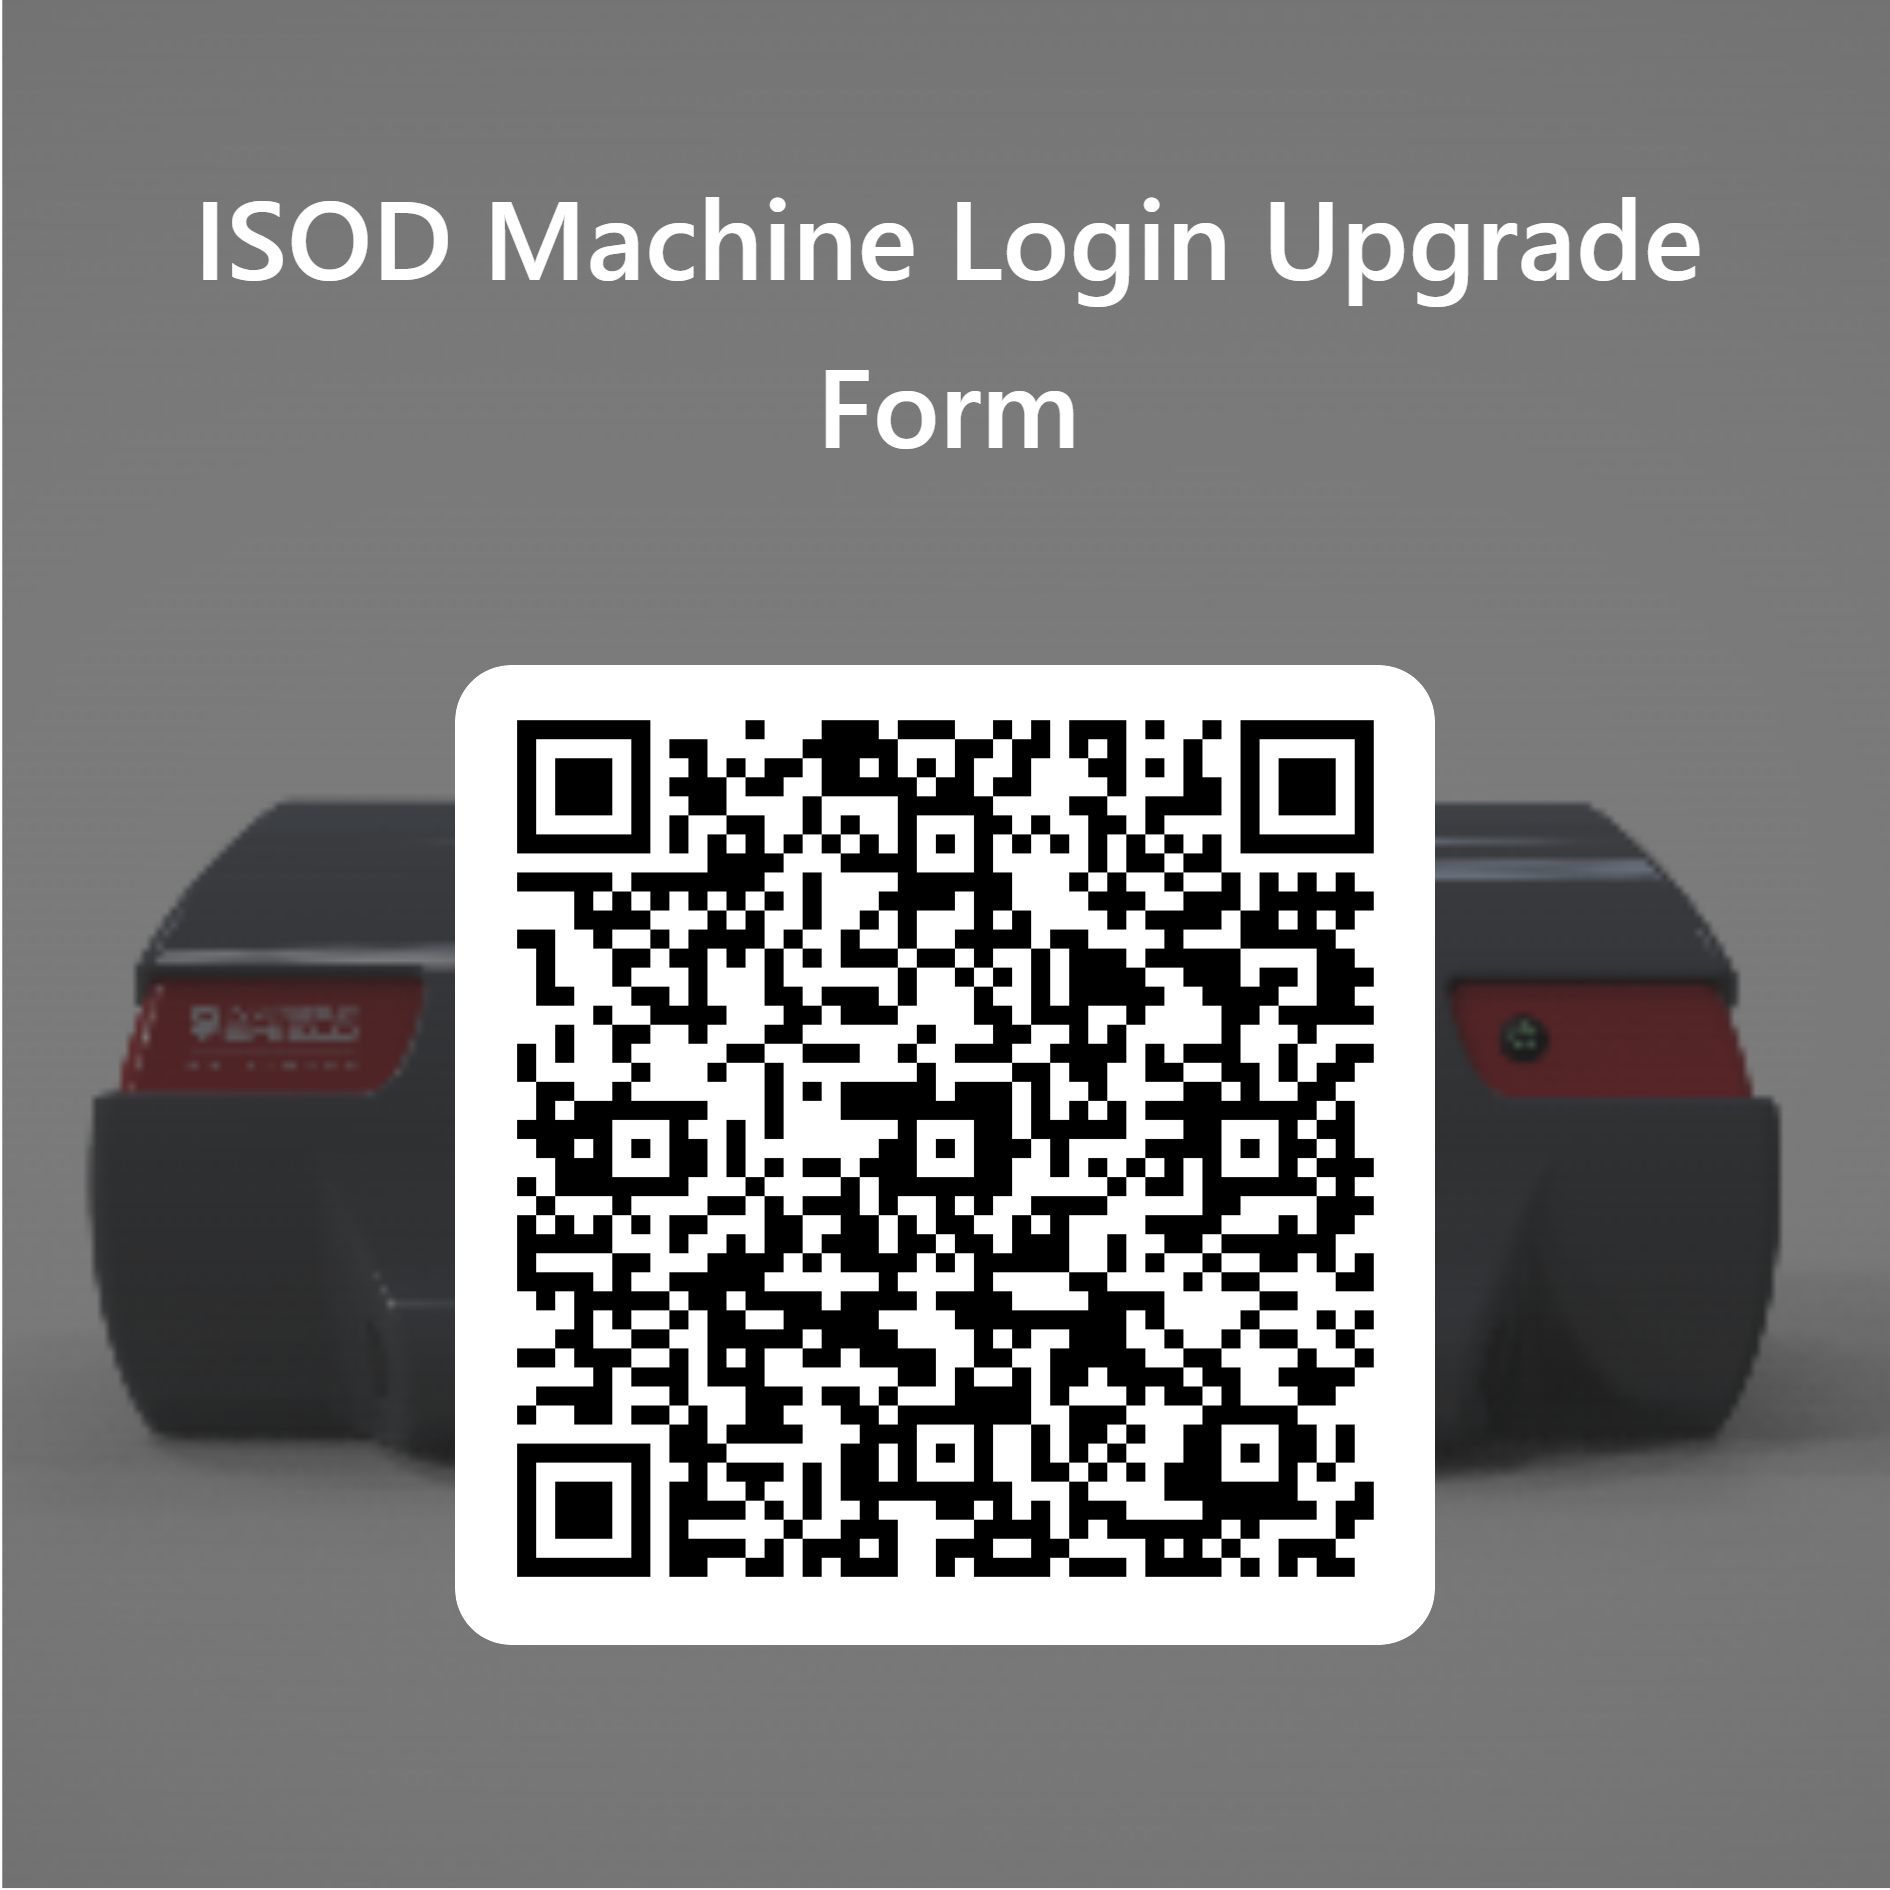 Formulario de Actualización de Acceso a Máquina ISOD